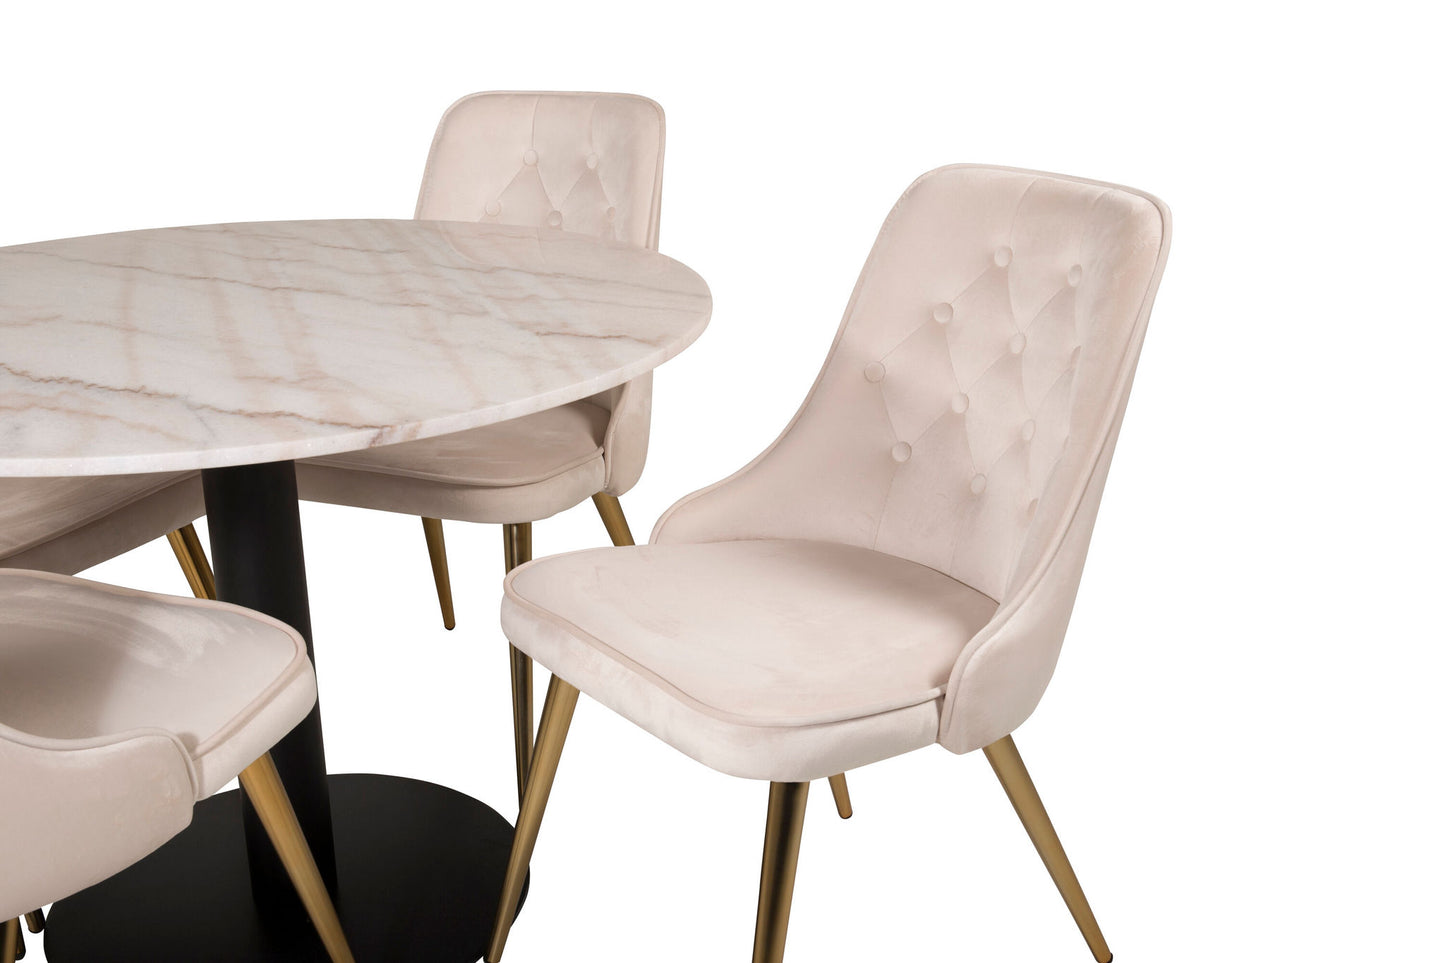 Estelle rundt Spisebord - Sort / Hvid marmor - ø106*H75+ velour Deluxe Spisebordsstol - Ben af børstet messig / Beige velour